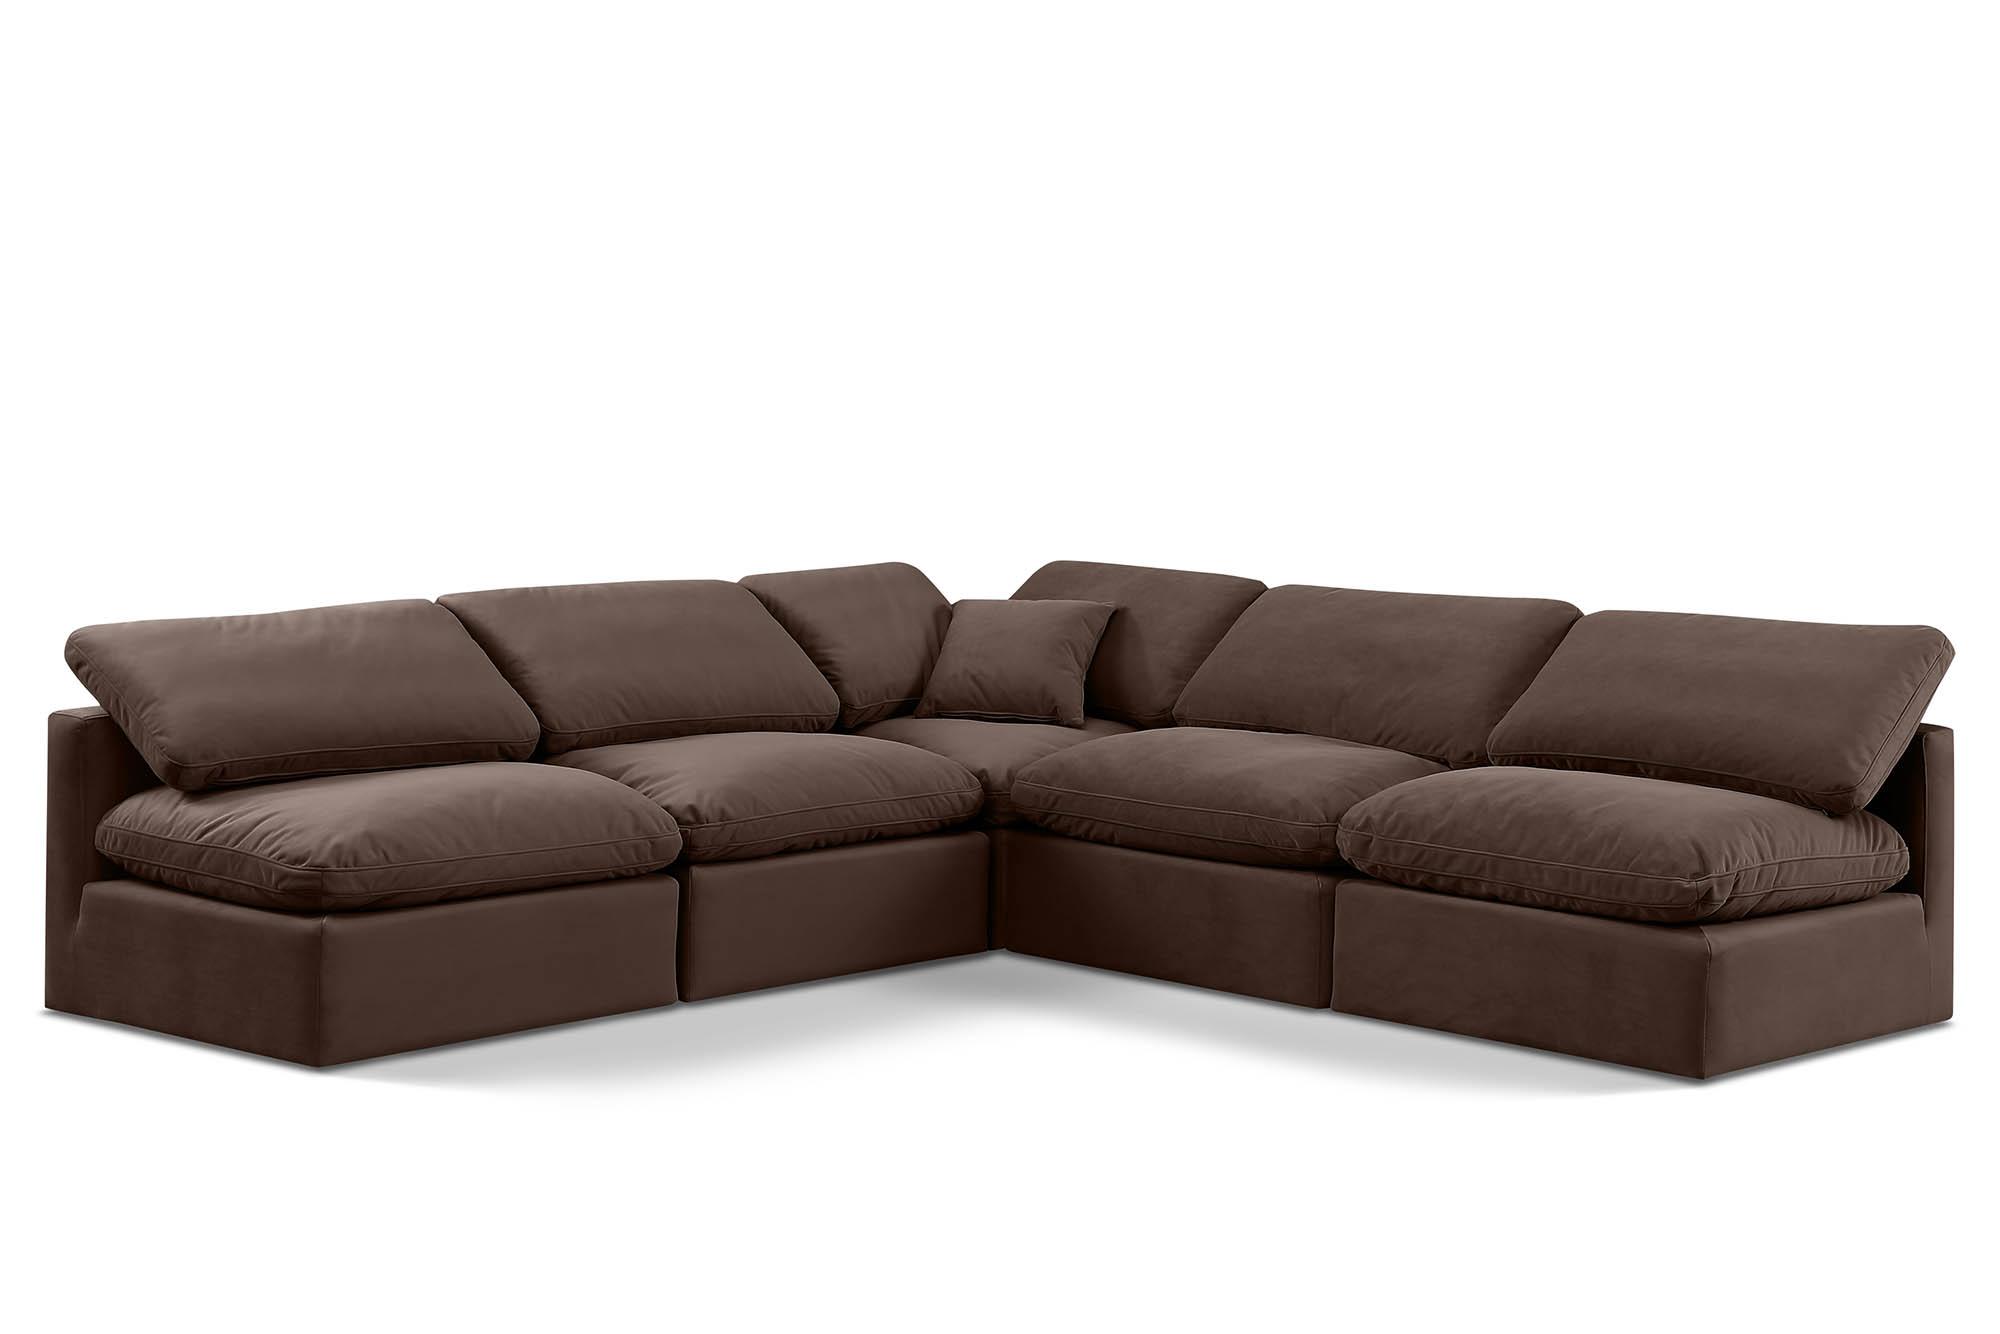 Contemporary, Modern Modular Sectional Sofa INDULGE 147Brown-Sec5B 147Brown-Sec5B in Brown Velvet